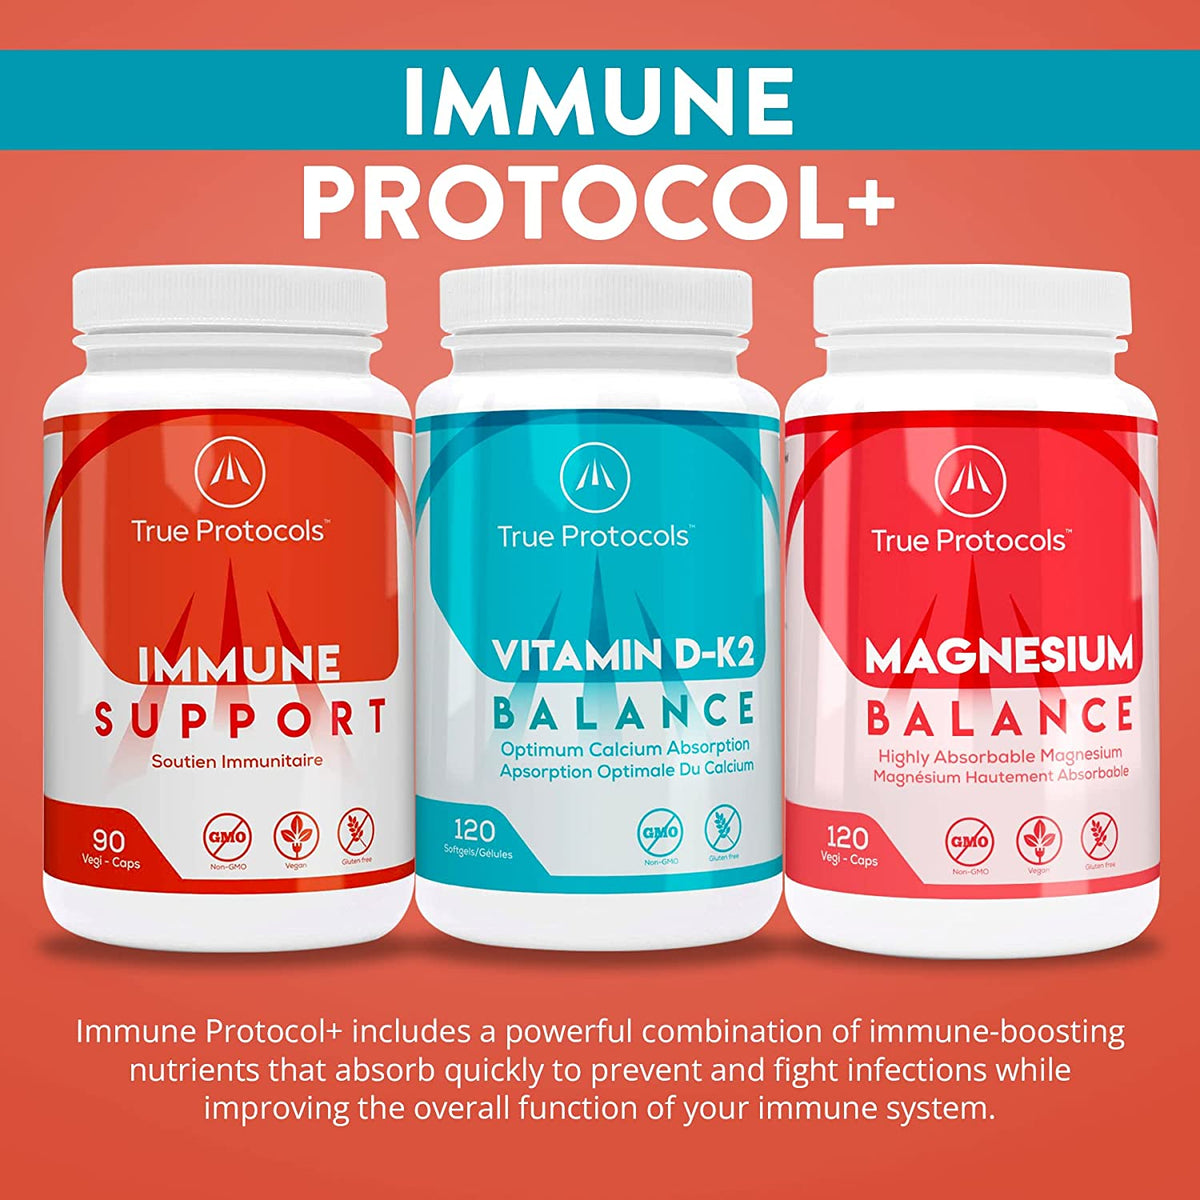 Immune Protocol+